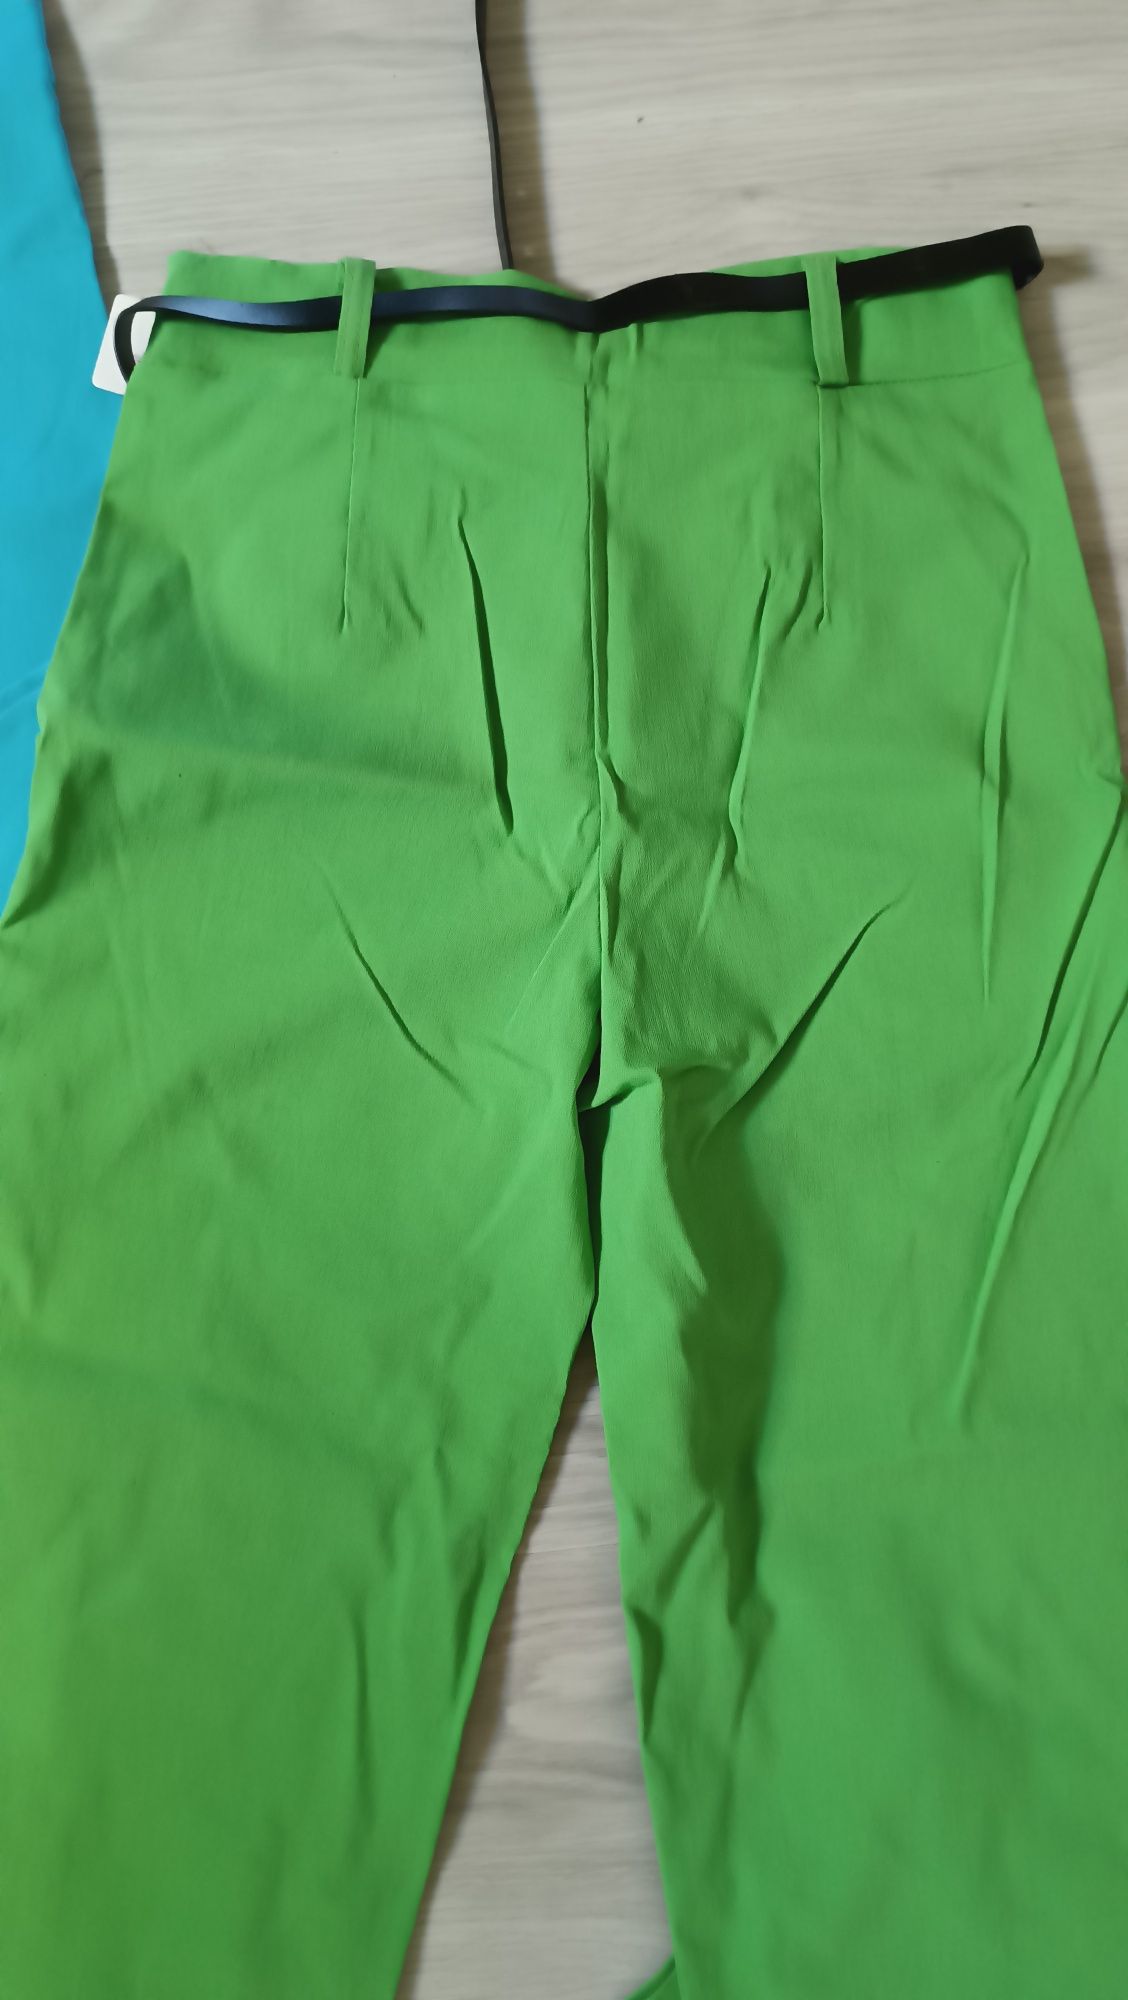 Nowe spodnie dzwony S/M niebieski zielony